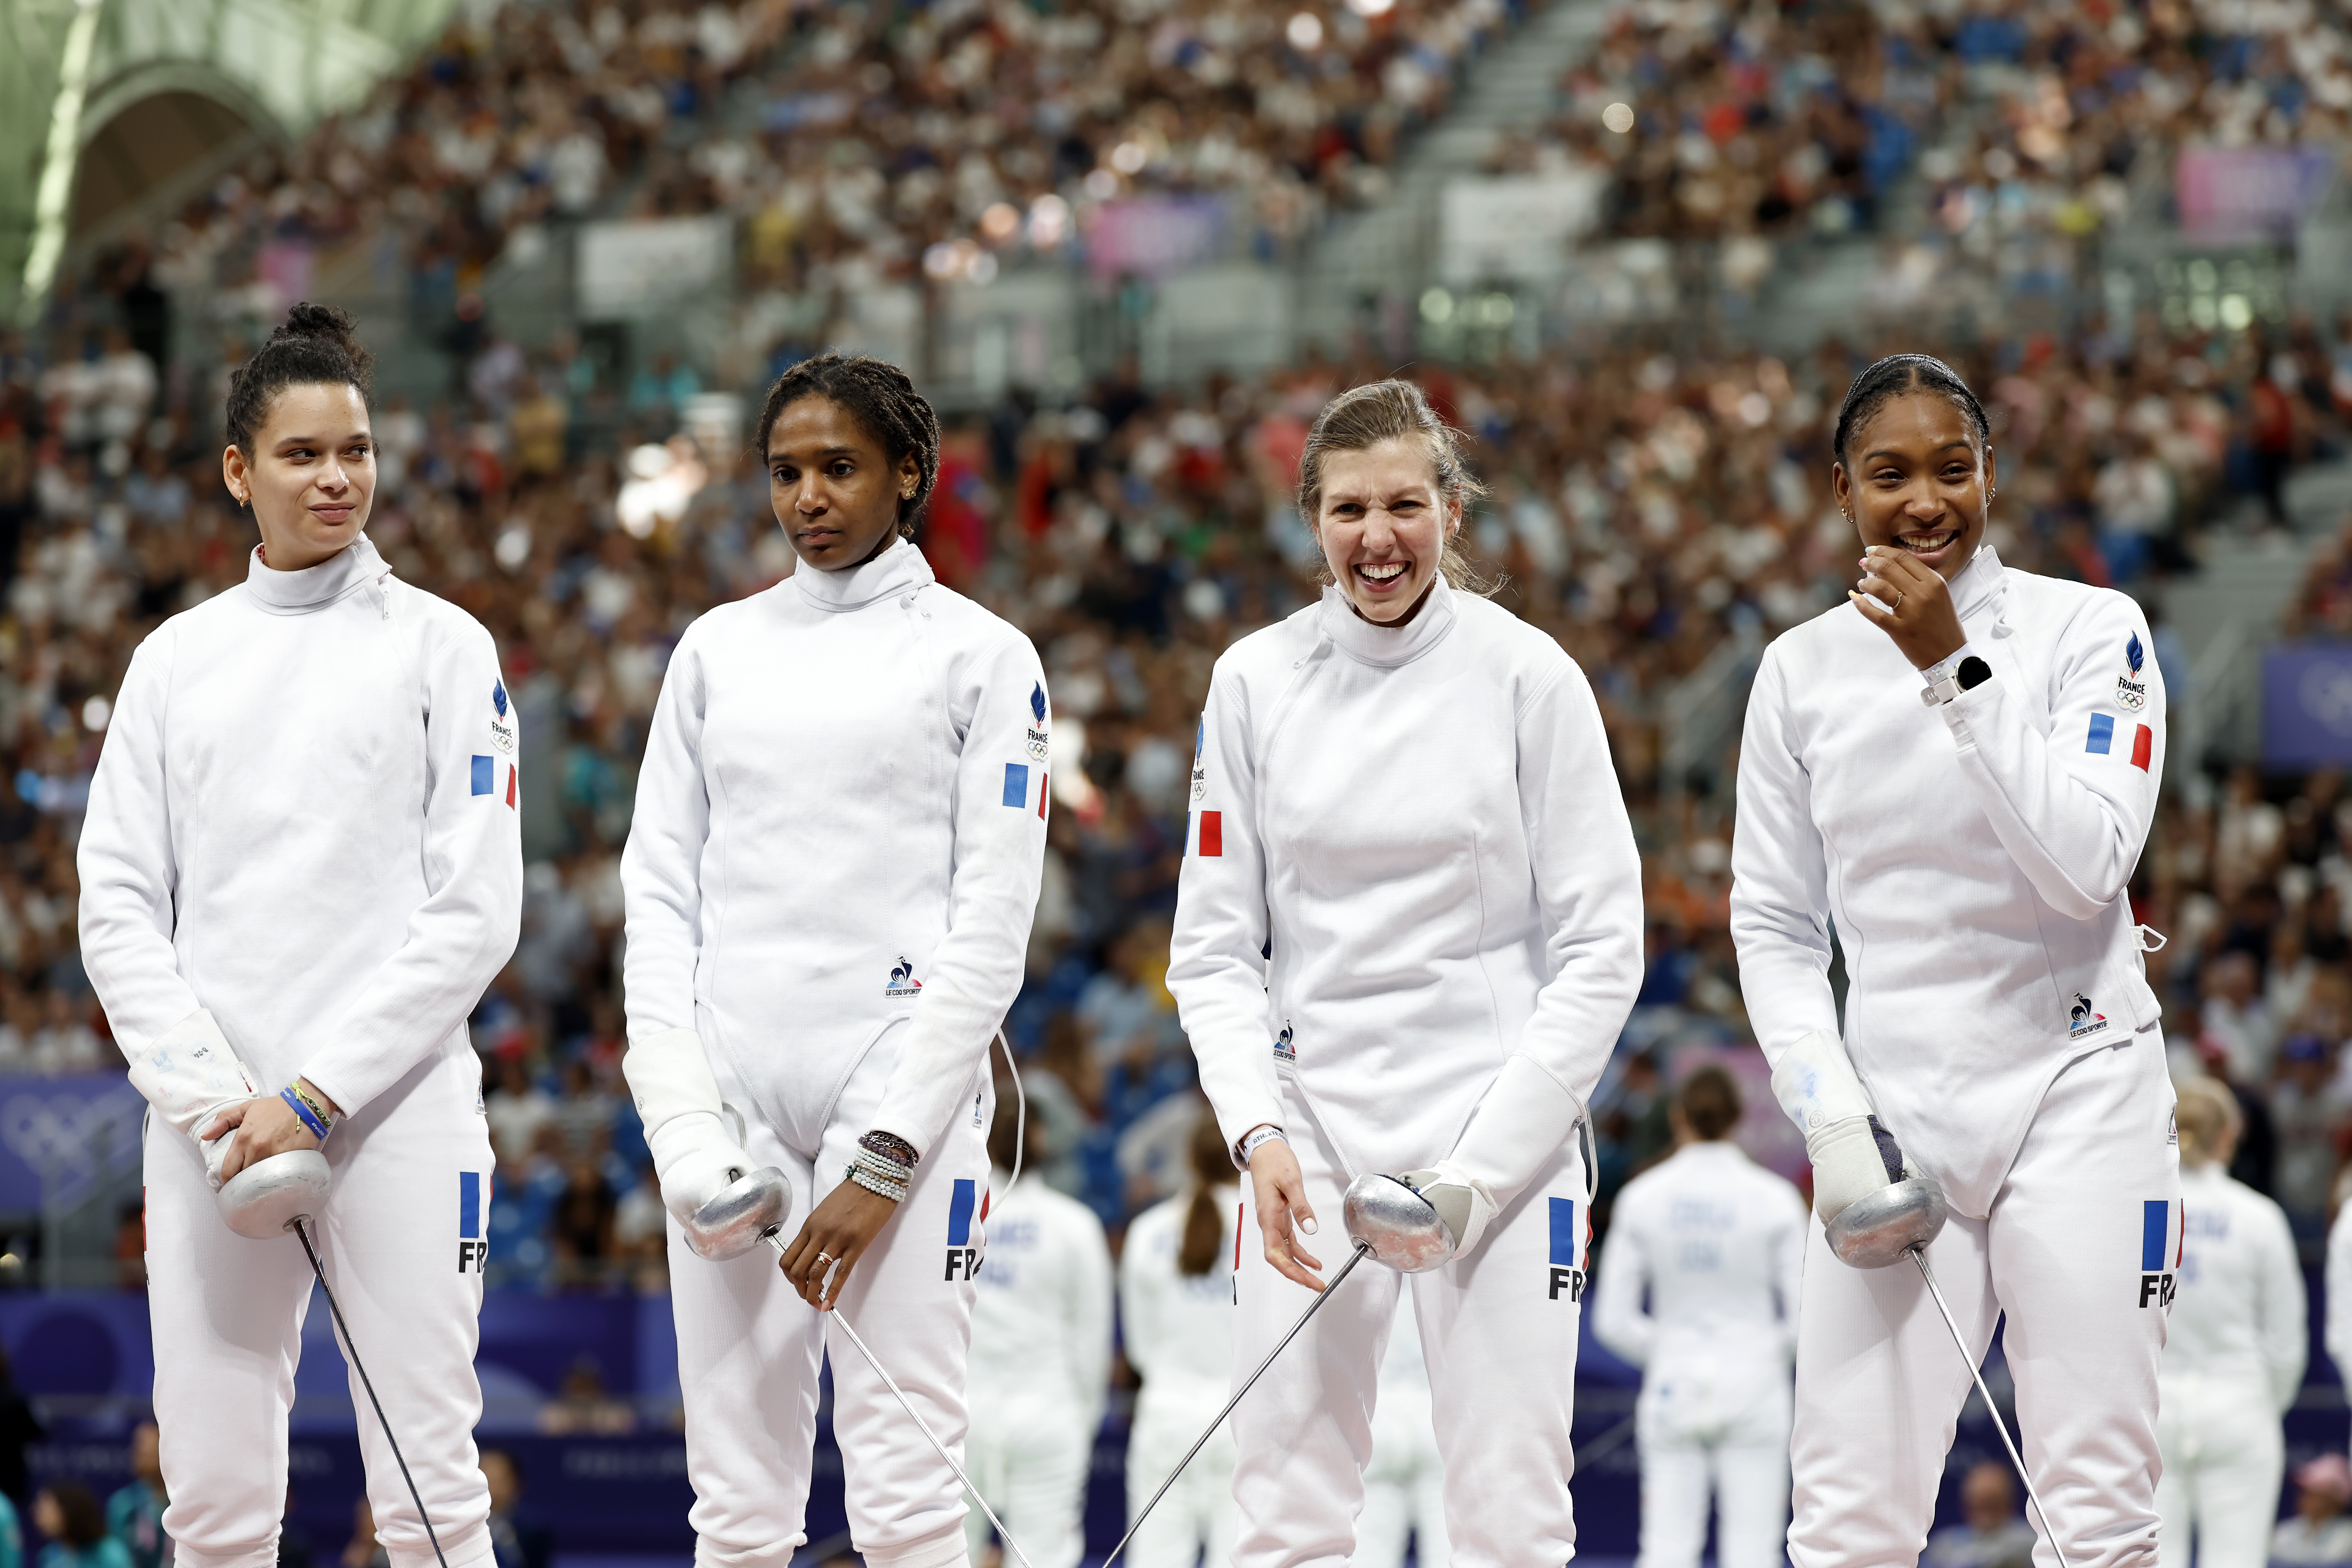     JO 2024 : l'équipe de France d'épée féminine prend la médaille d'argent

